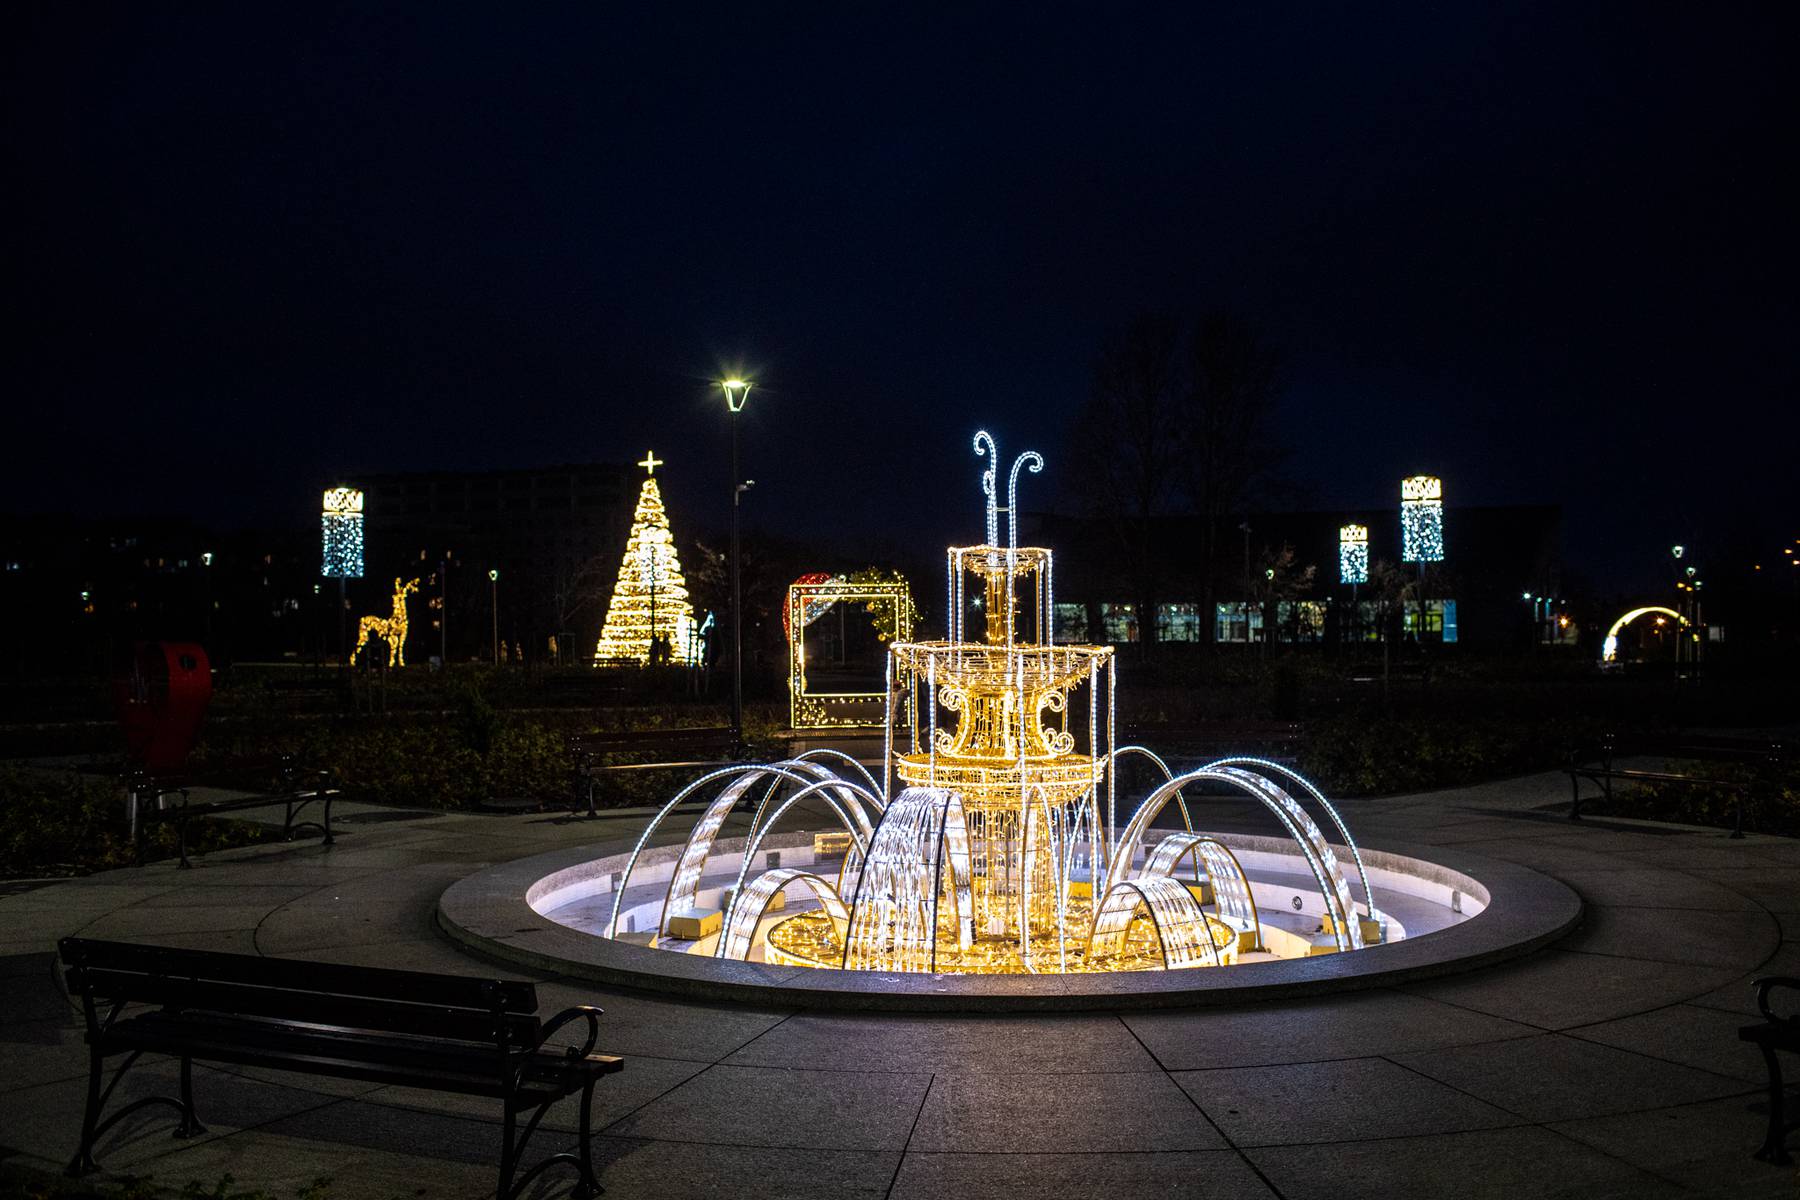 świąteczne iluminacje w Łomży, foto Kamil Brzostowski